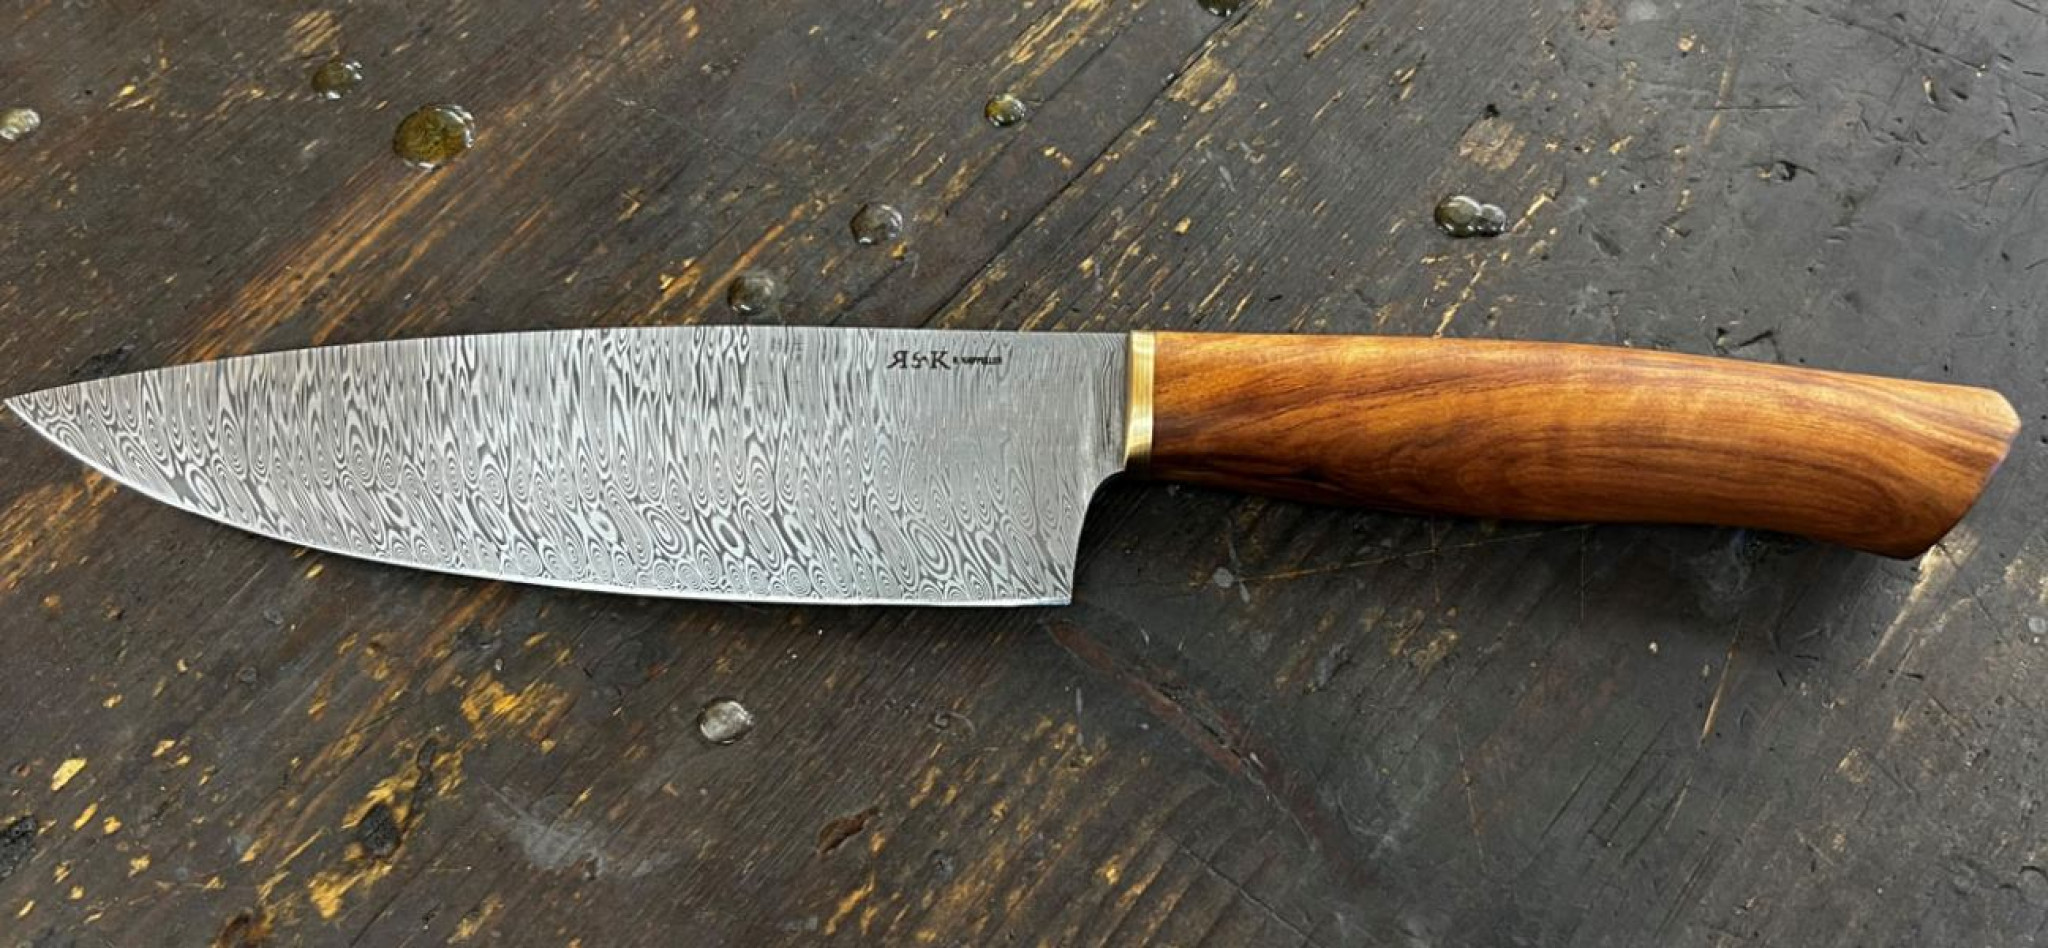 Das handgeschmiedete Messer für Max Natmessnig / Foto beigestellt